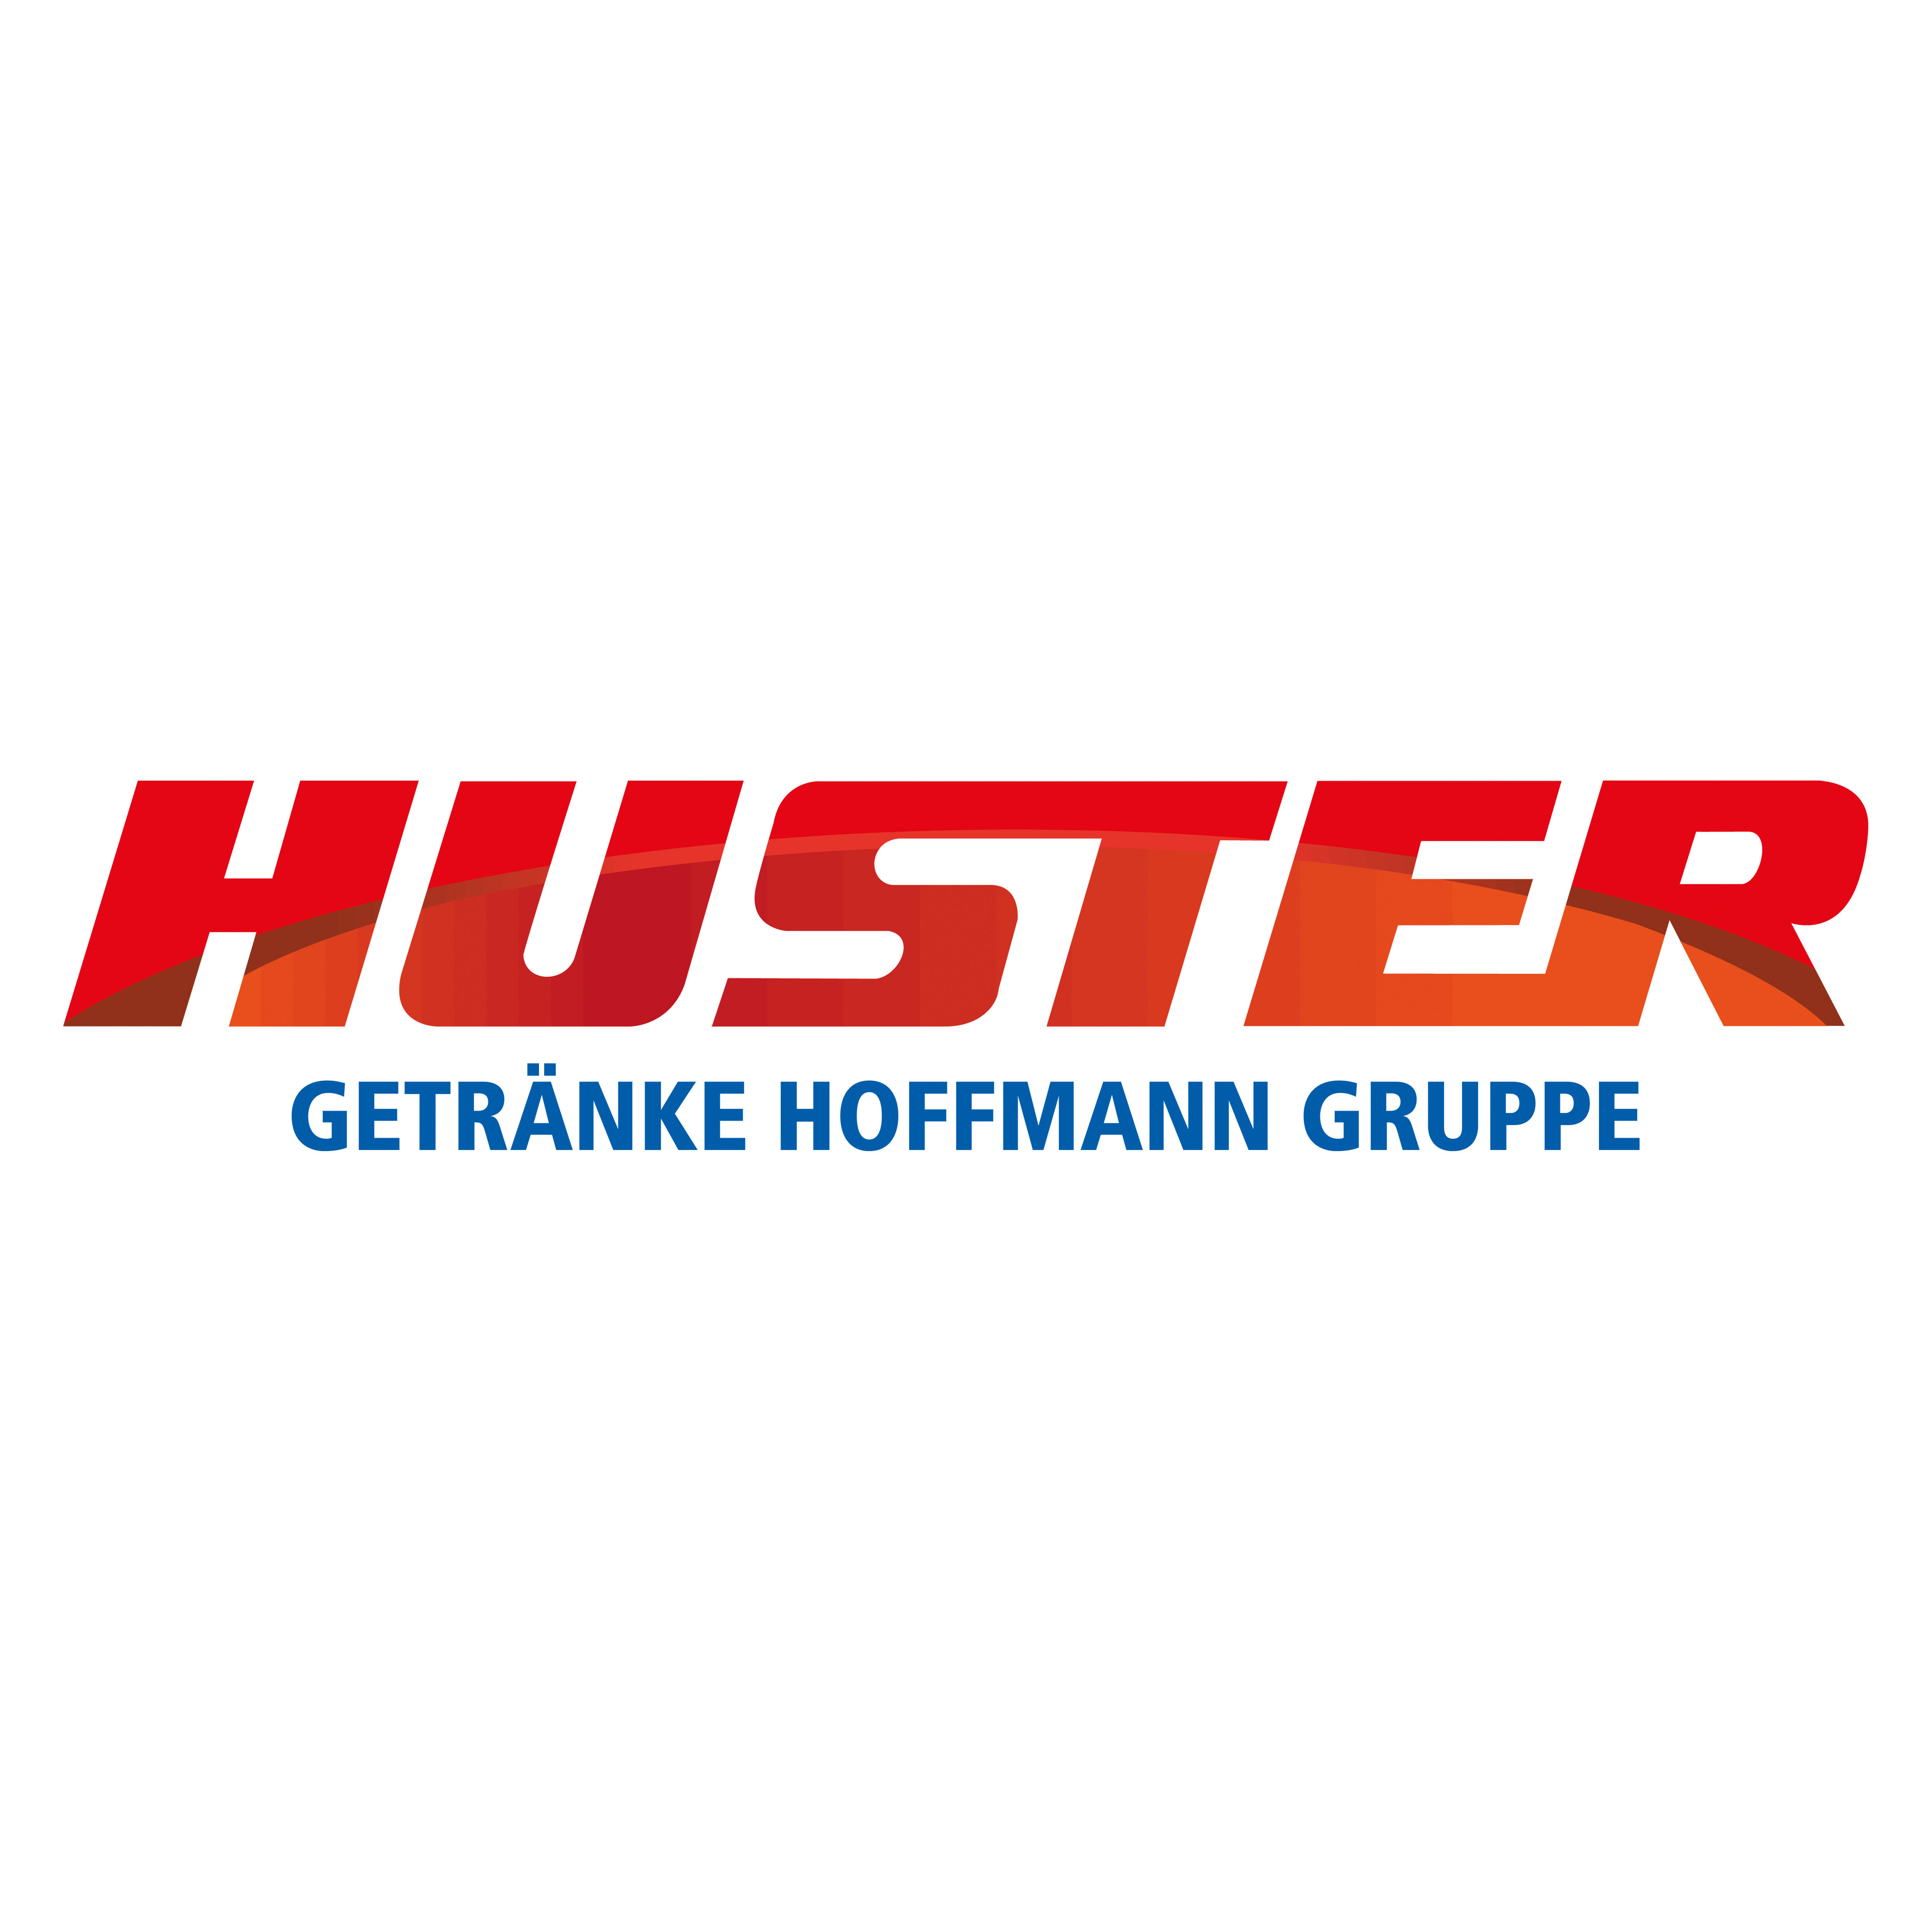 Huster Getränke Hoffmann Gruppe in Chemnitz - Logo